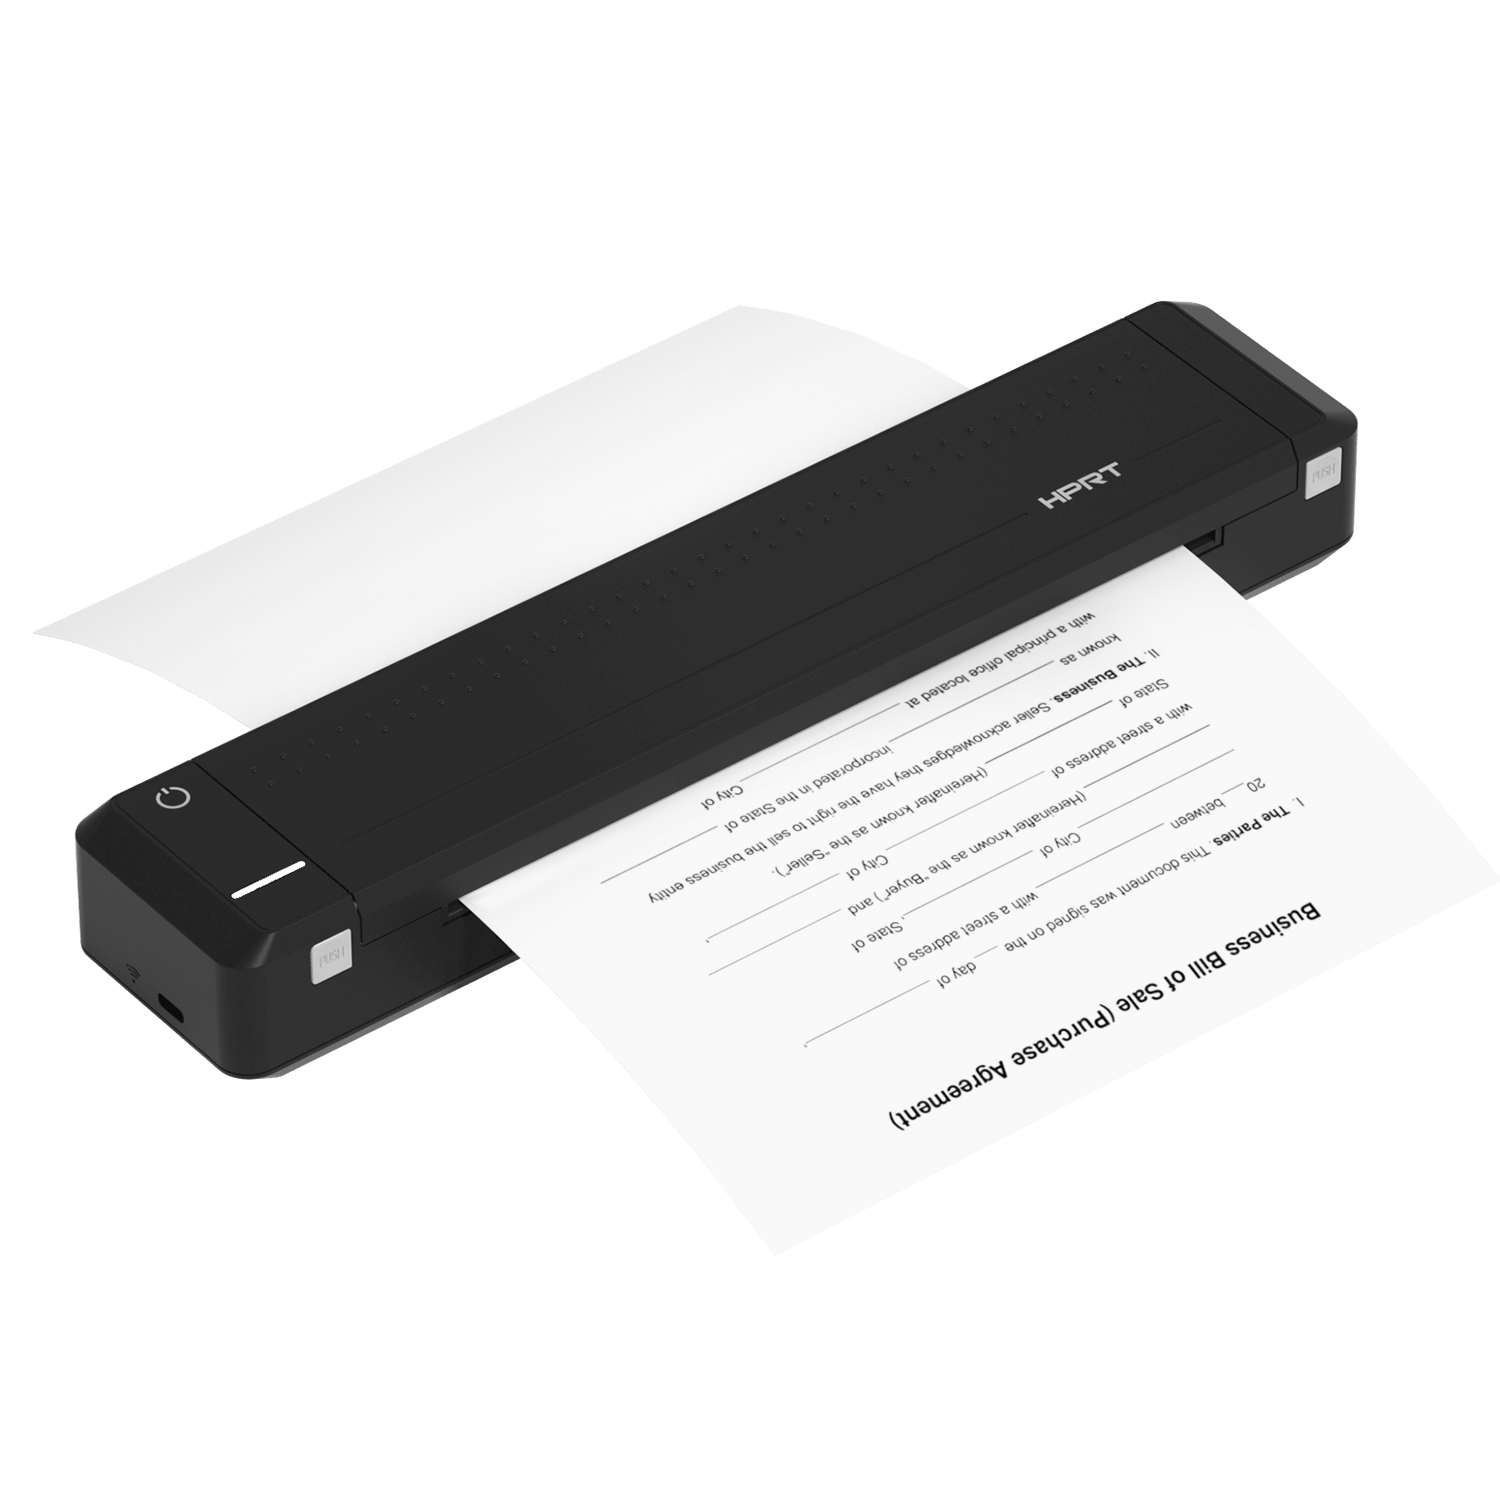 Itari Imprimante Thermique Bluetooth A4, imprimante Portable Mobile -  Petite imprimante Portable sans Fil pour Les déplacements et Le Domicile,  Prend